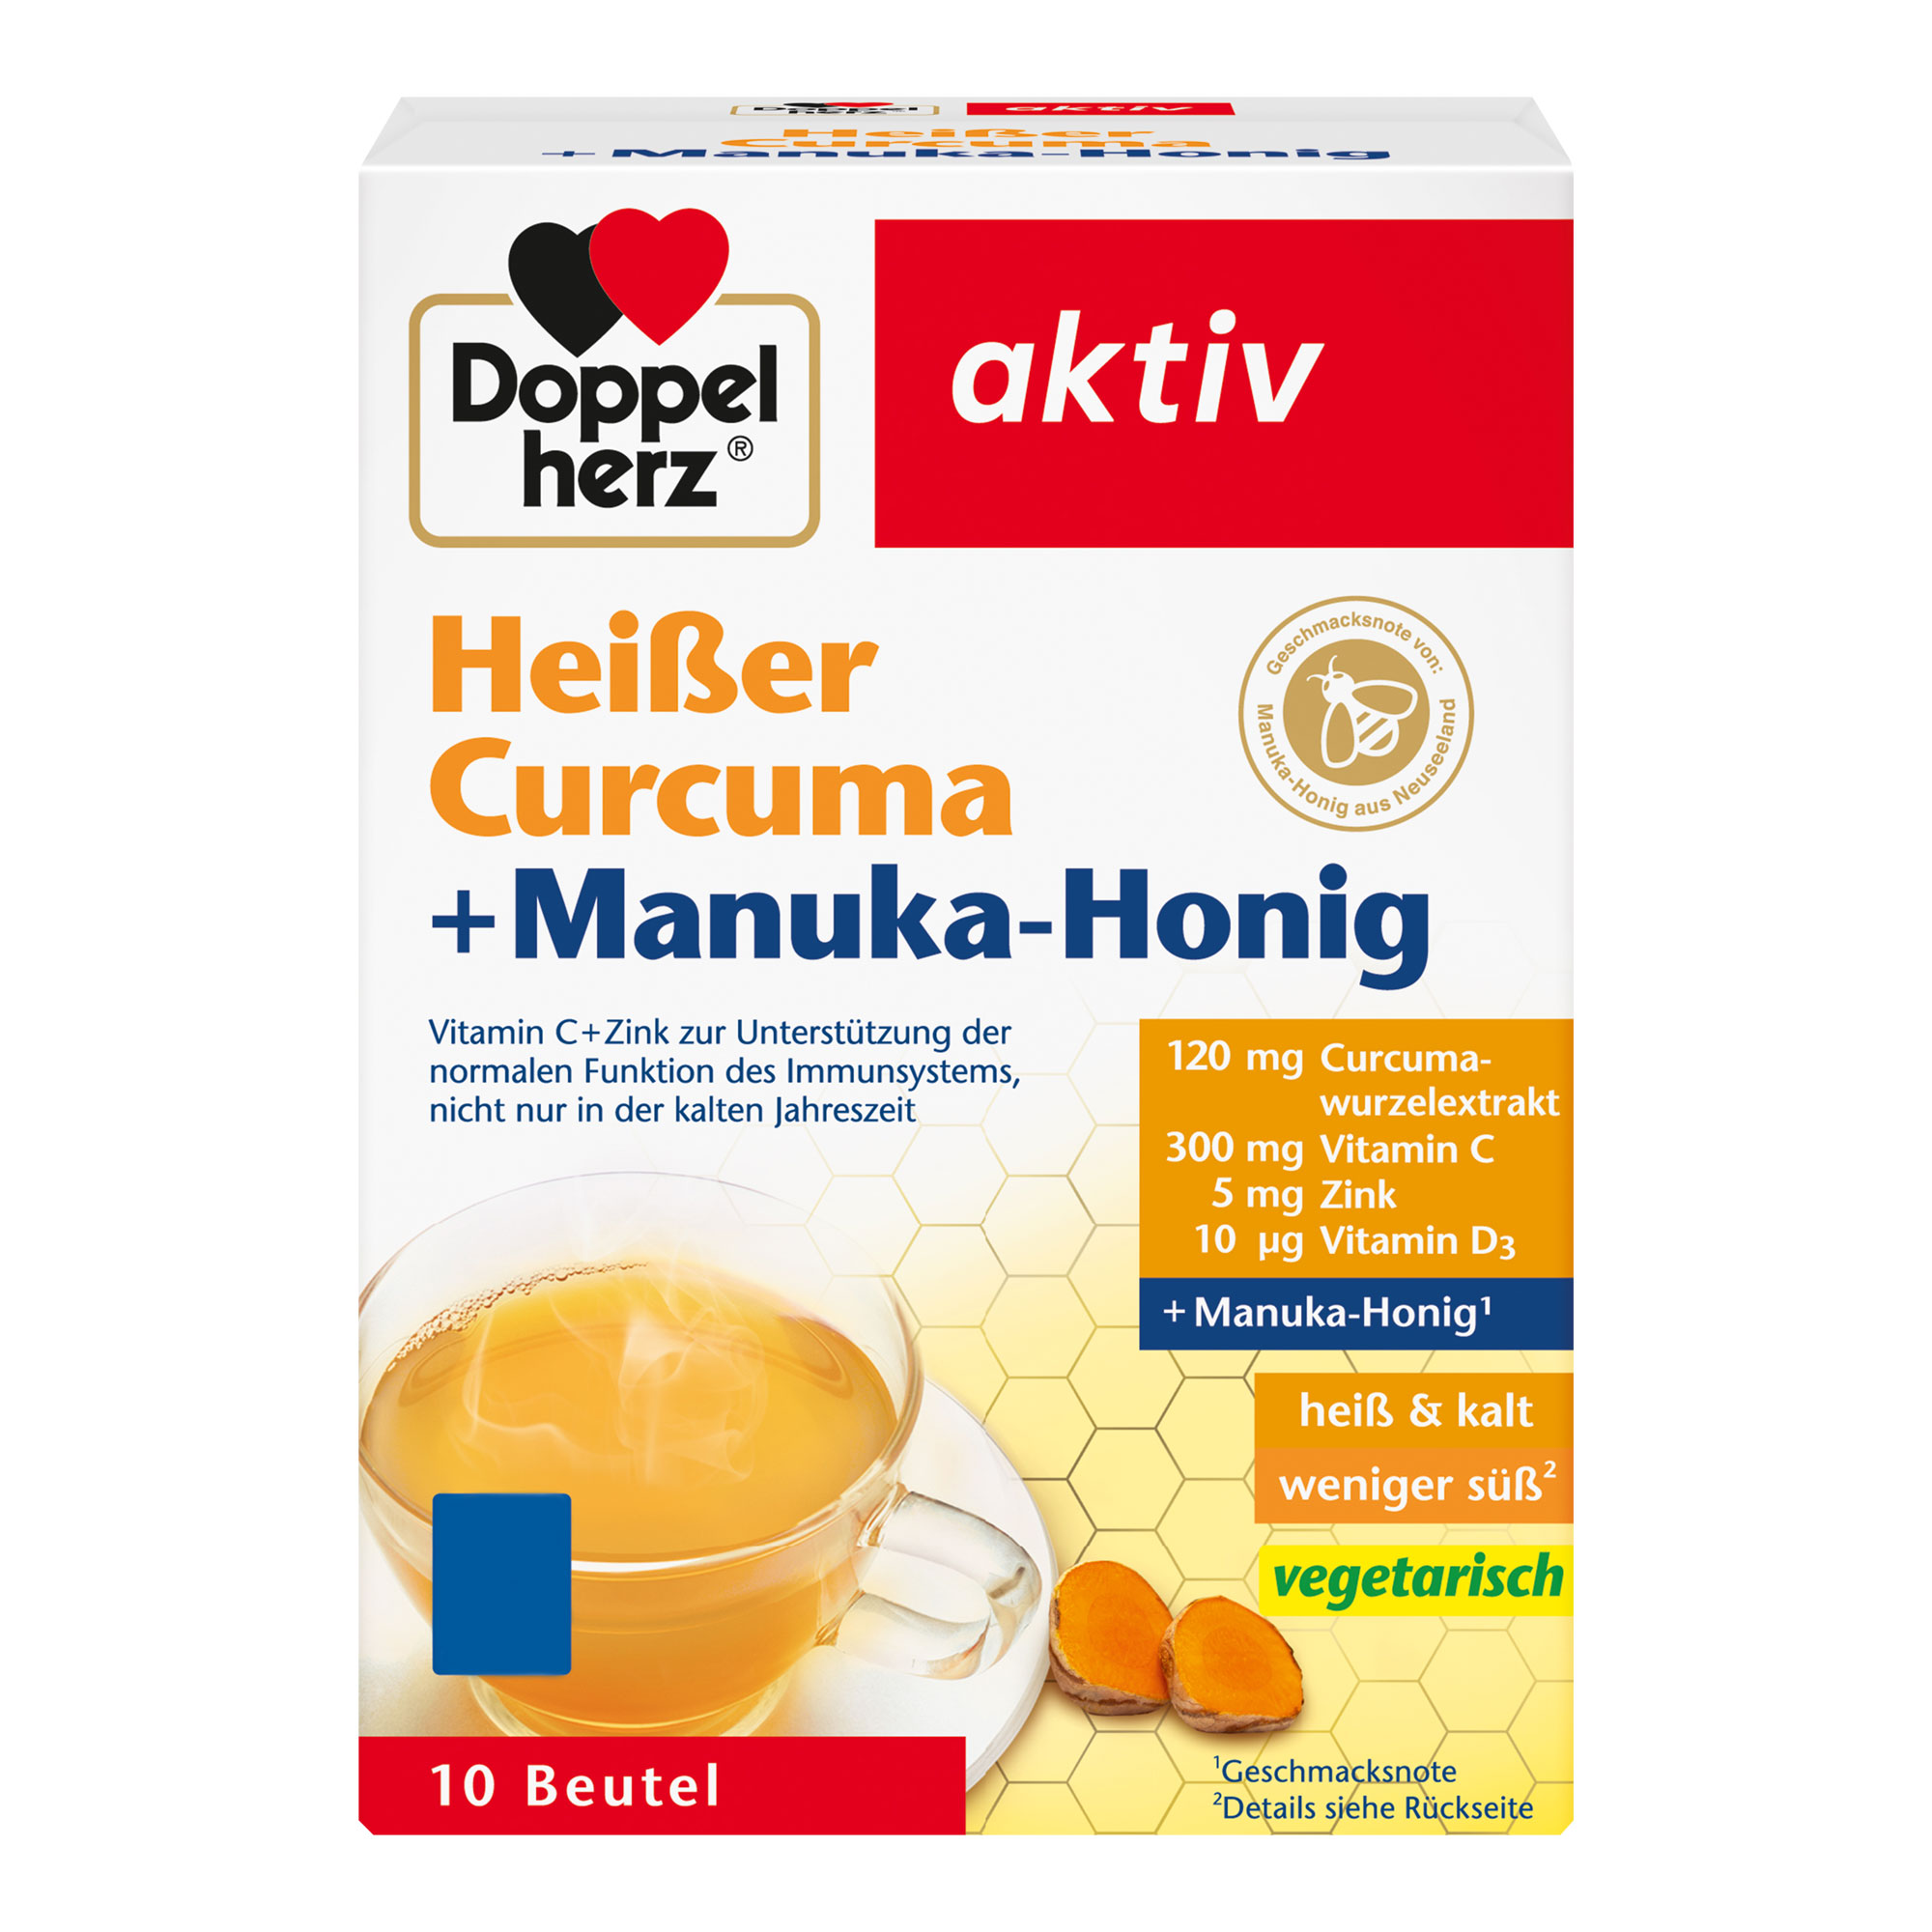 Nahrungsergänzungsmittel mit Vitamin C, D, Zink, Curcumawurzelextrakt und der Geschmacksnote von Manuka-Honig.